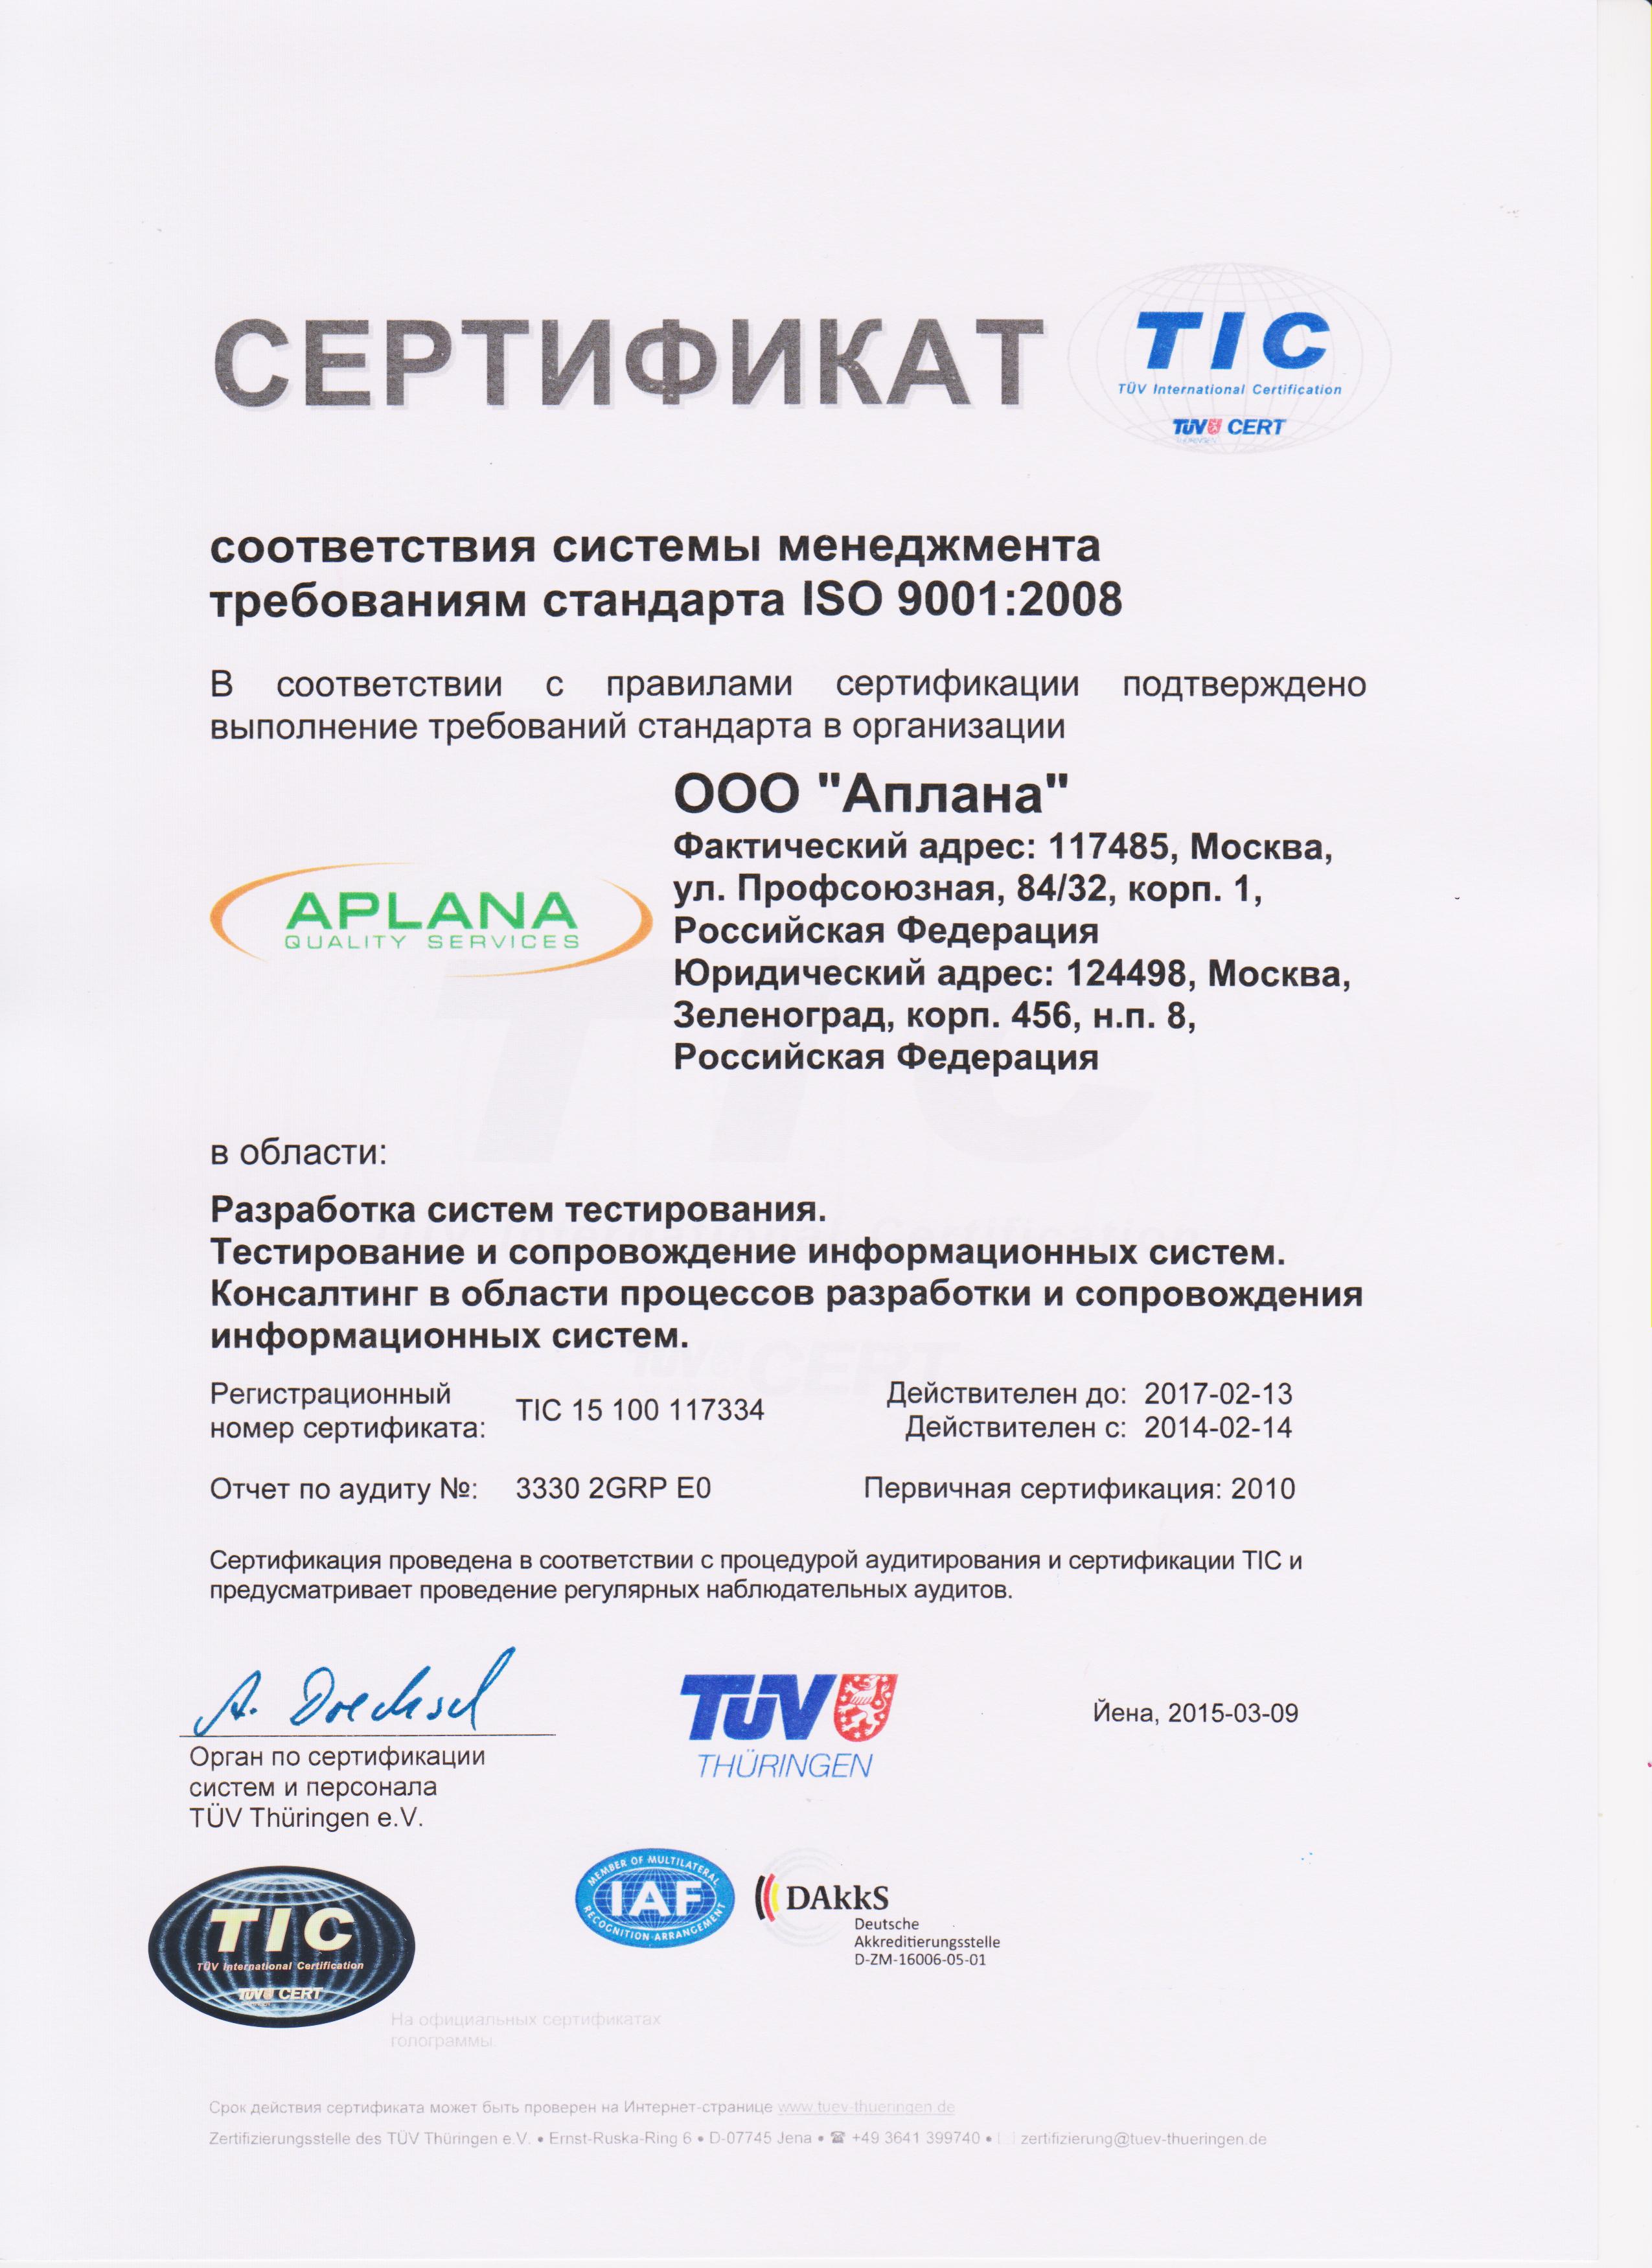 Аплана прошла аудит по ISO 9001:2008